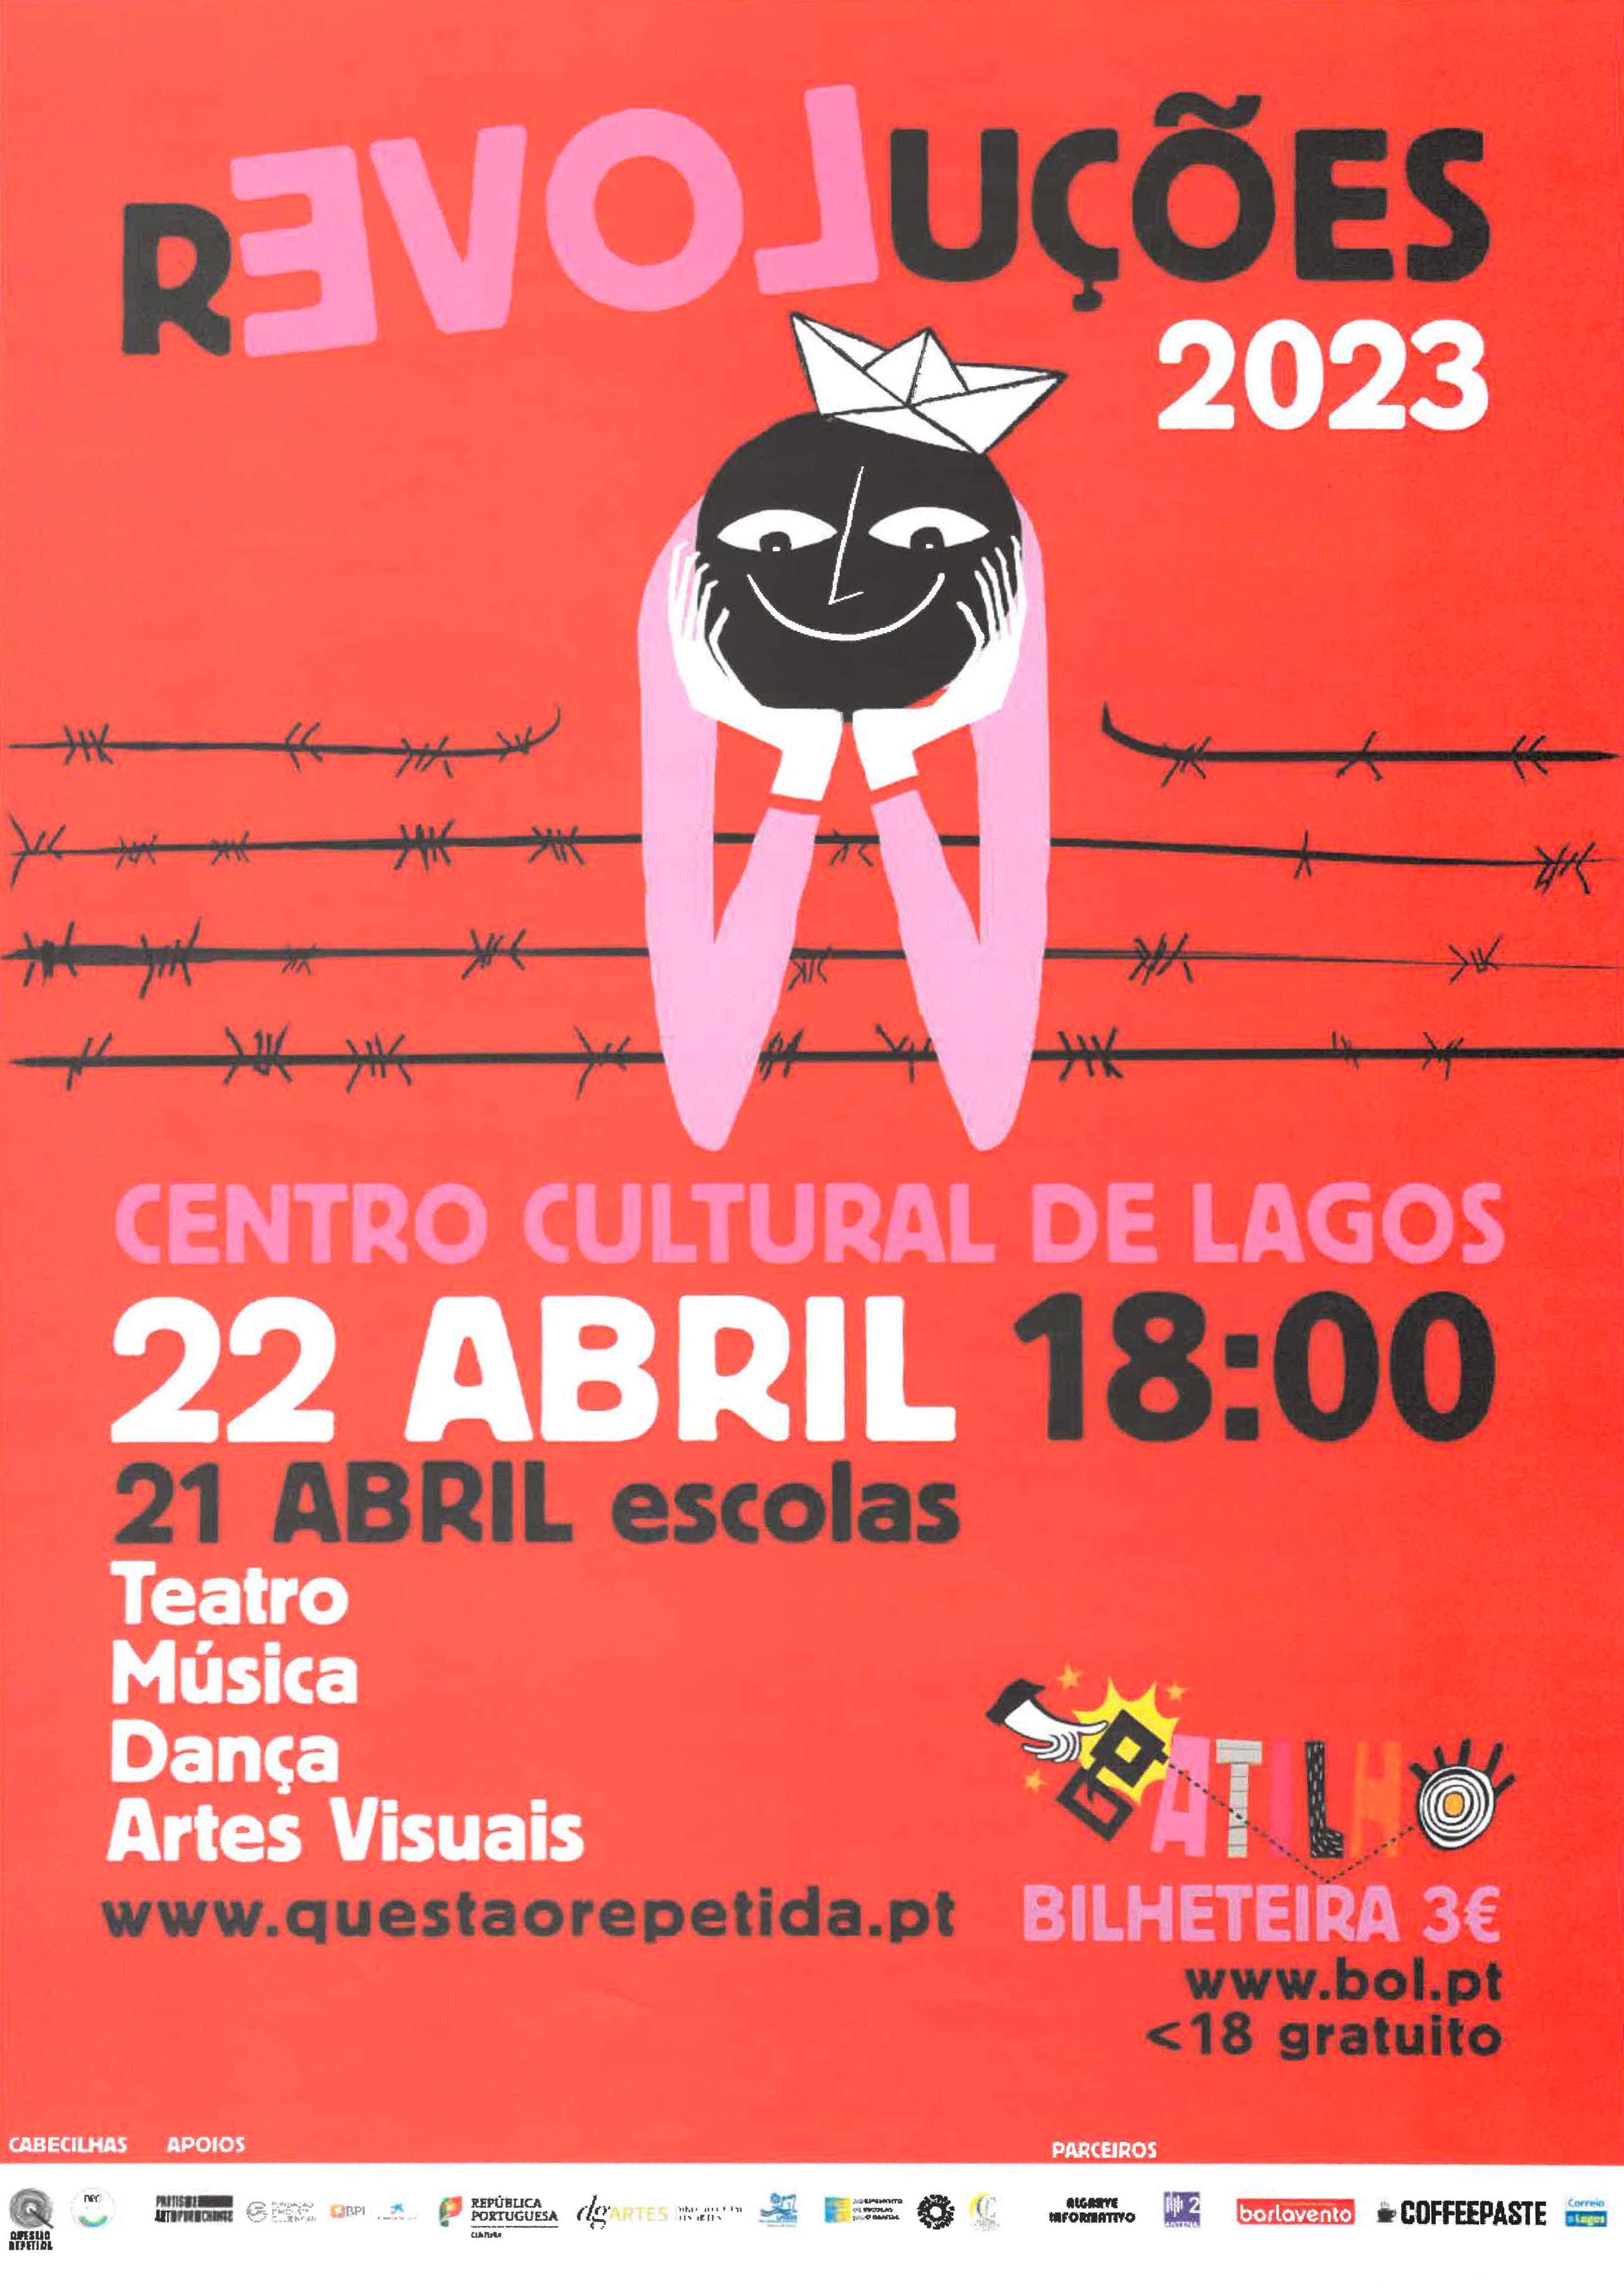 Imagem Revoluções 2023 - Centro Cultural de Lagos